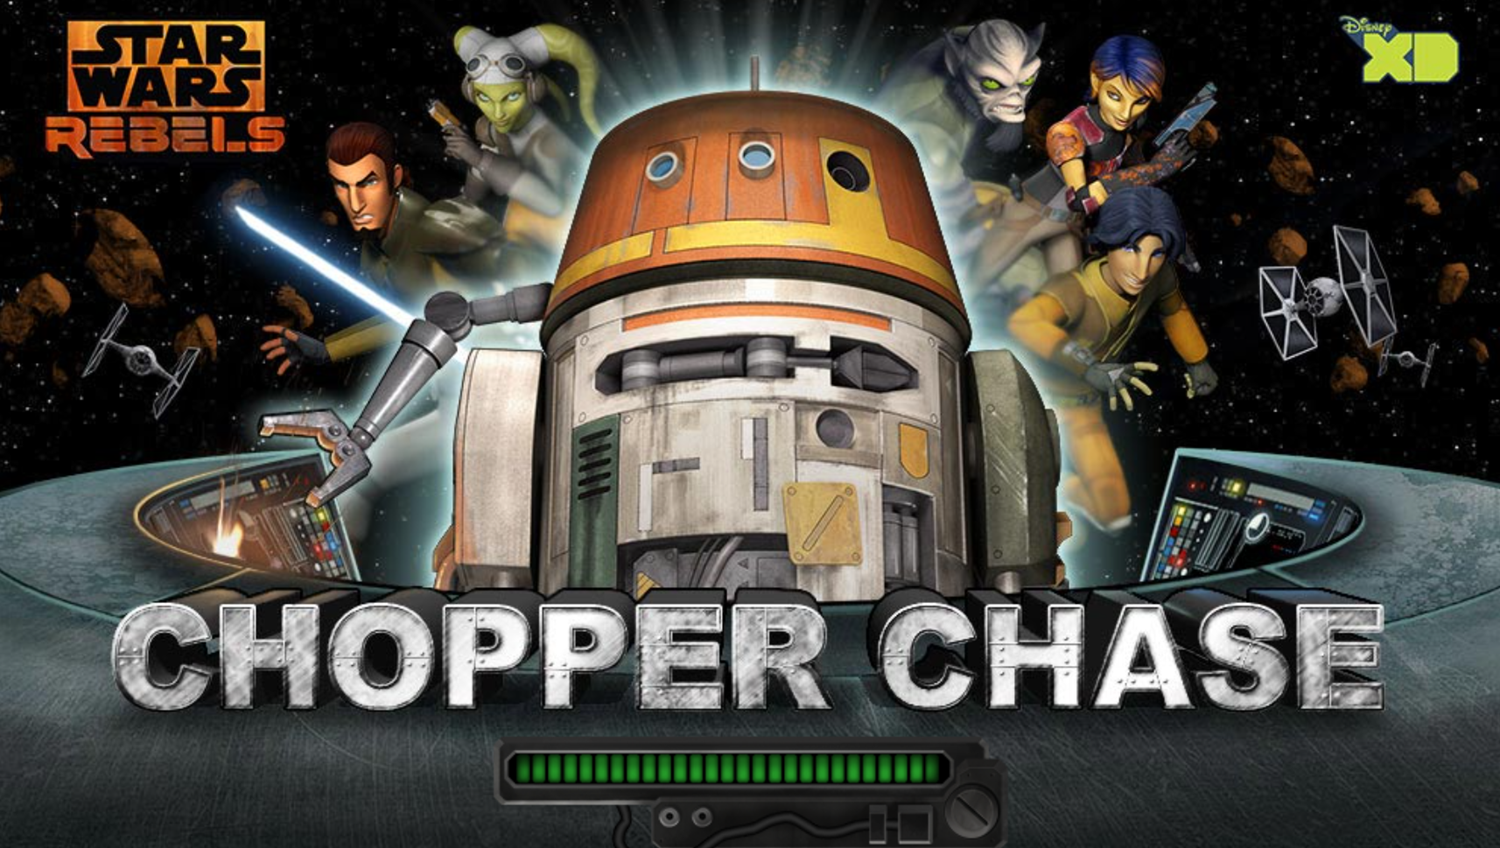 Star Wars Rebels Chopper Chase Game Welcome Screen Screenshot.